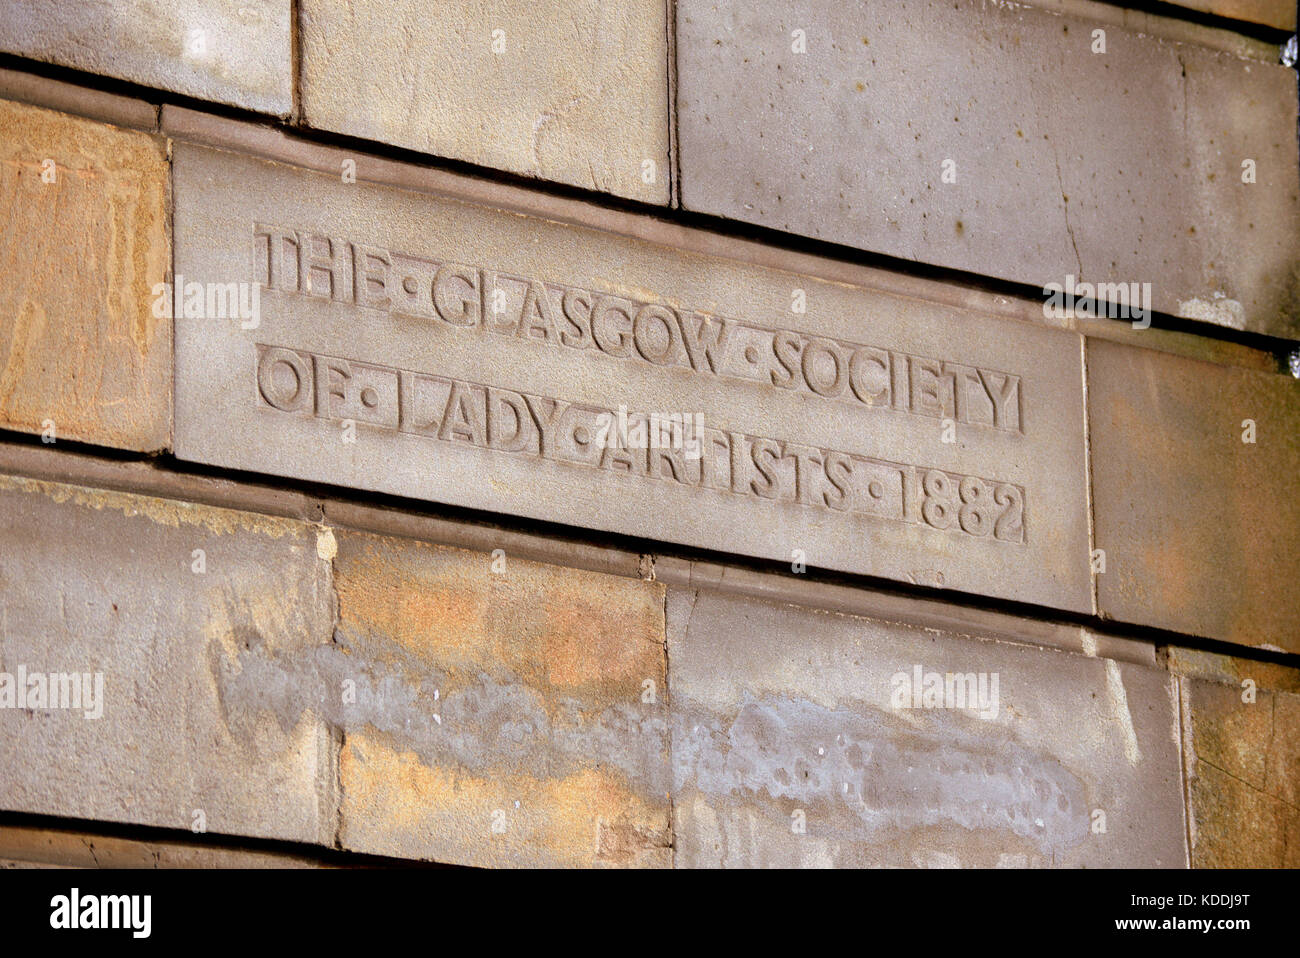 La società di Glasgow di lady artisti 1882 segno sulla costruzione di 5 Blythswood Square glasgow Foto Stock